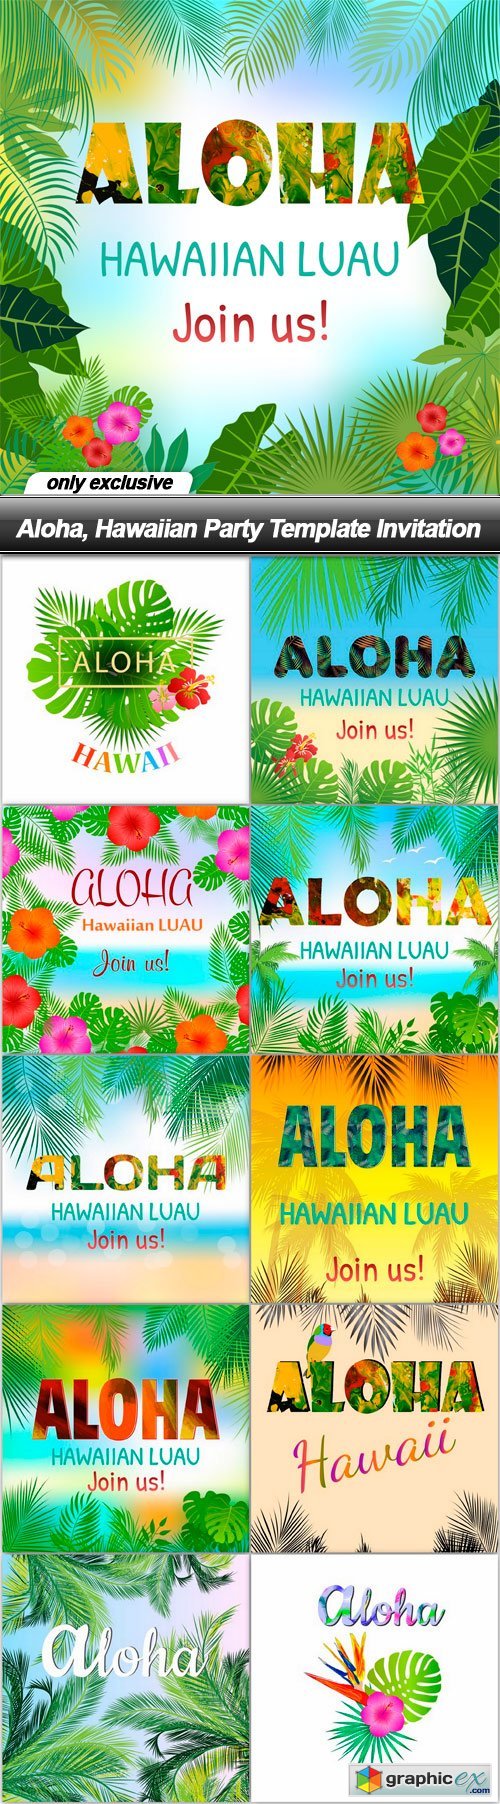 Aloha, Hawaiian Party Template Invitation - 11 EPS